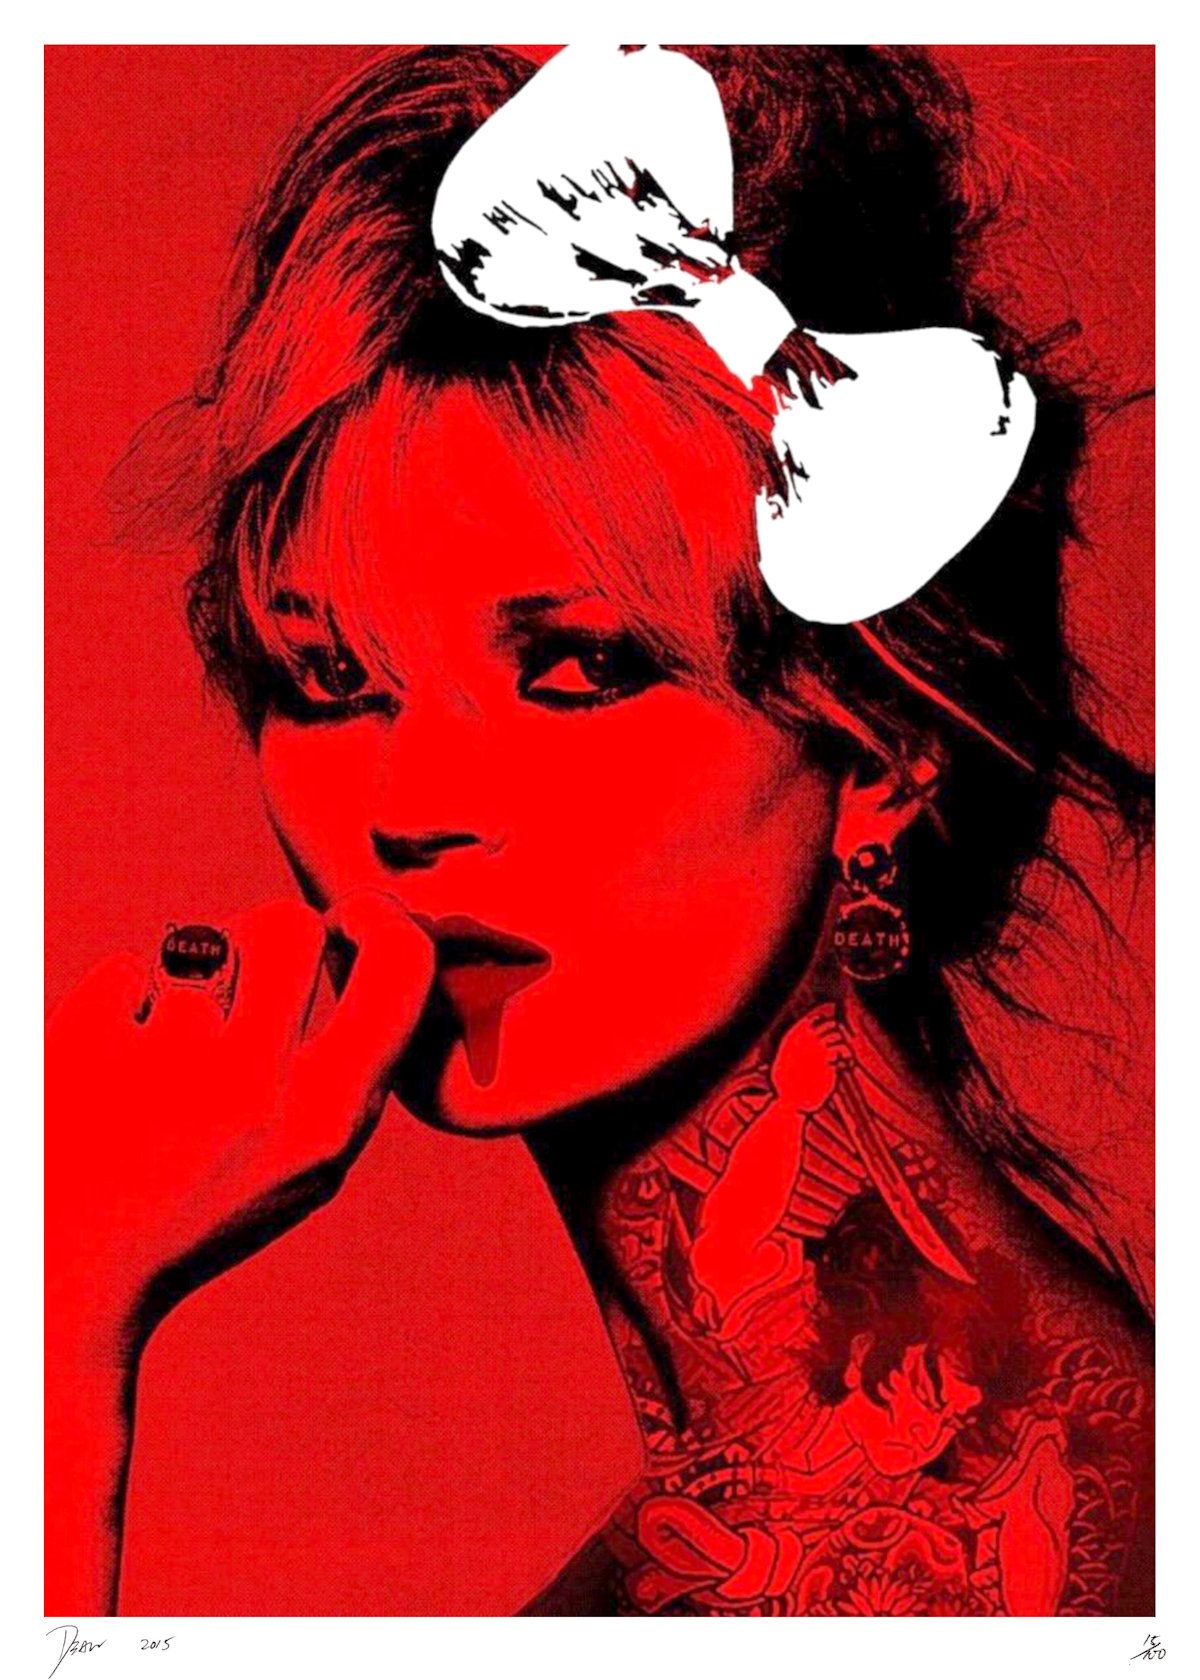 Death NYC 纽约市的死亡

凯特-莫斯的纹身红，2015年

丝网印刷。

限量100张的印刷品

由艺术家用铅笔签名并编号：编号15/100（艺术家的&hellip;